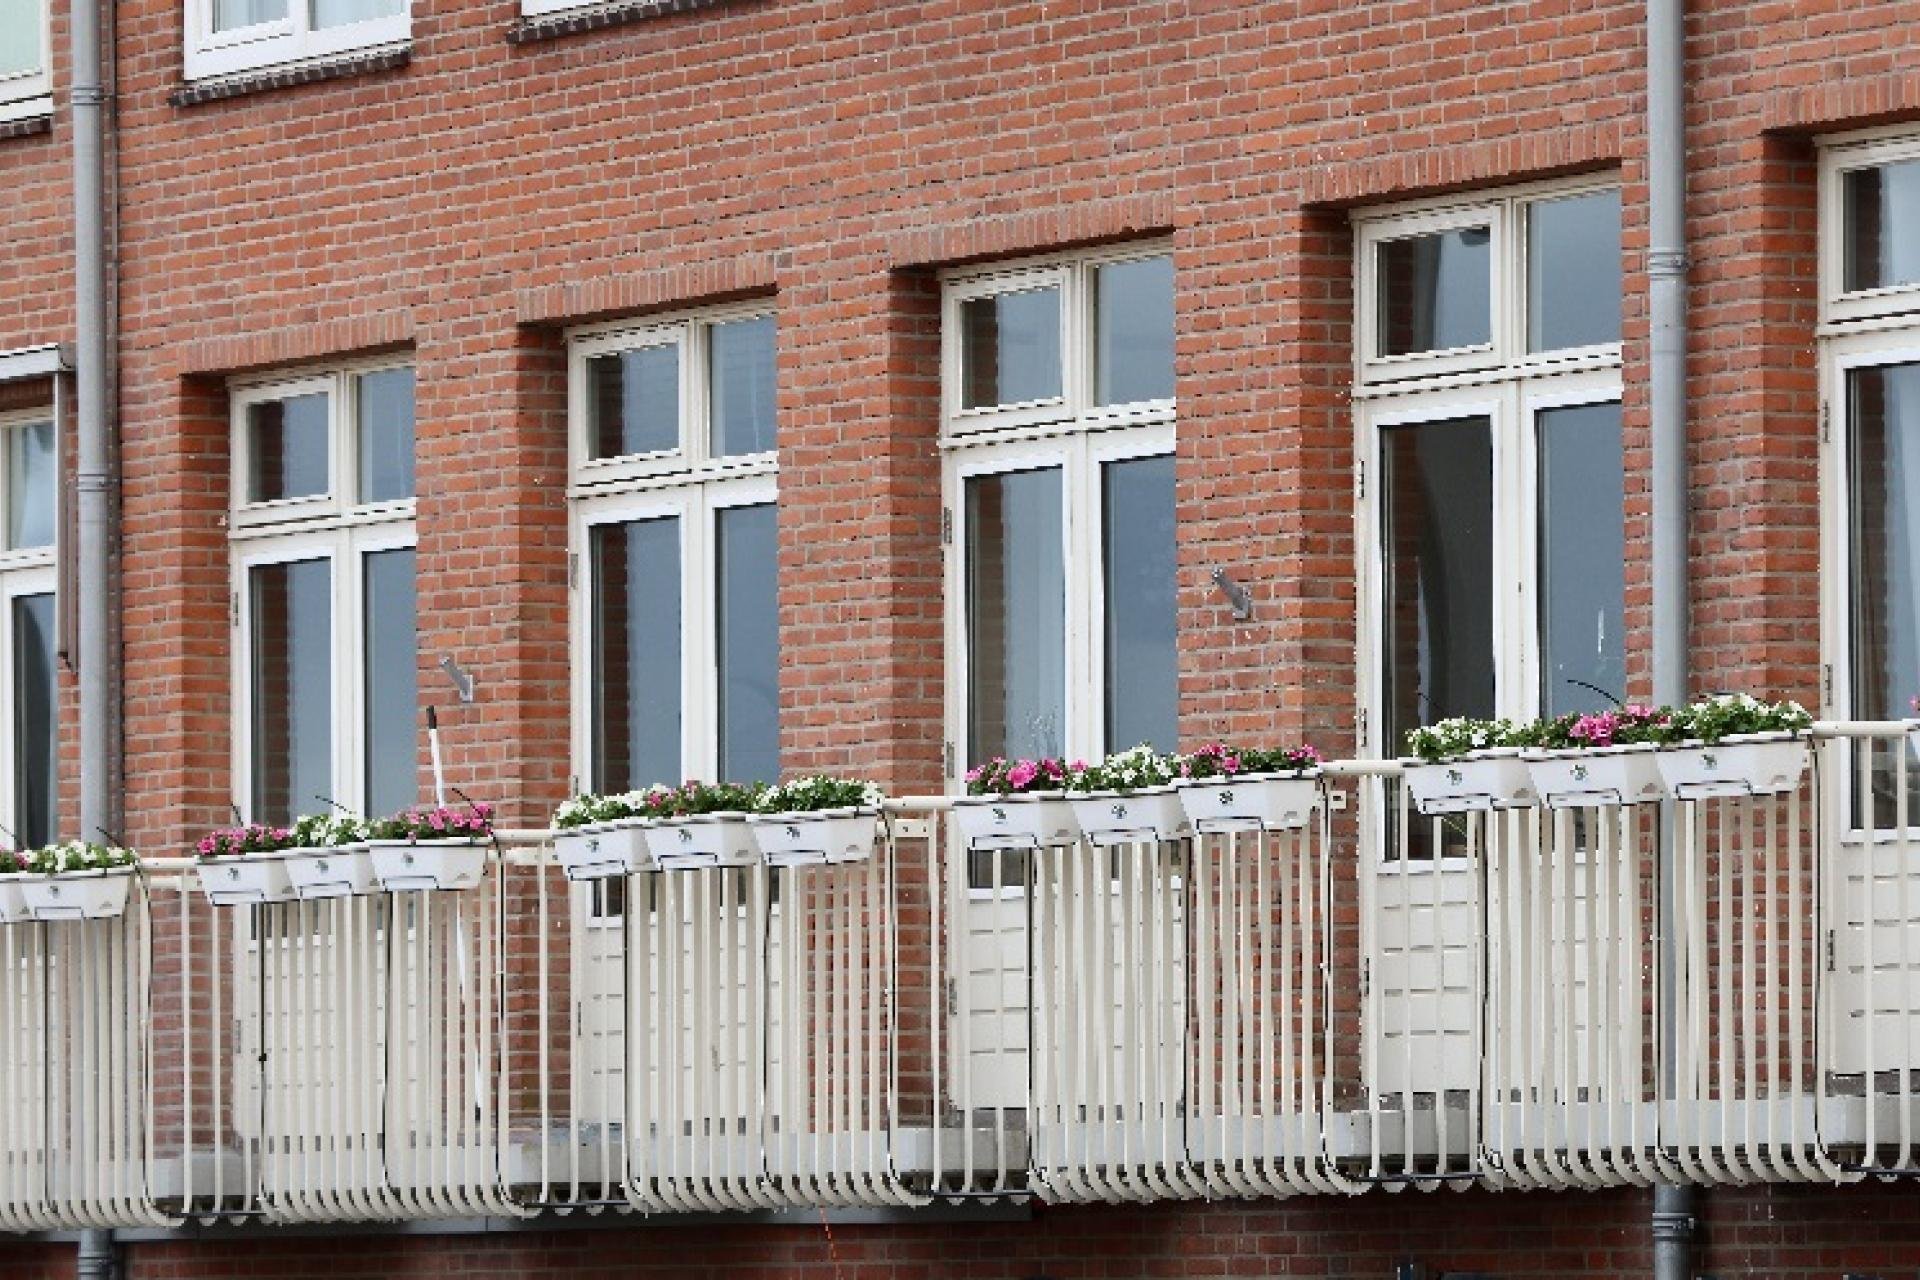 bloembakken aan de balkons van plein 1945